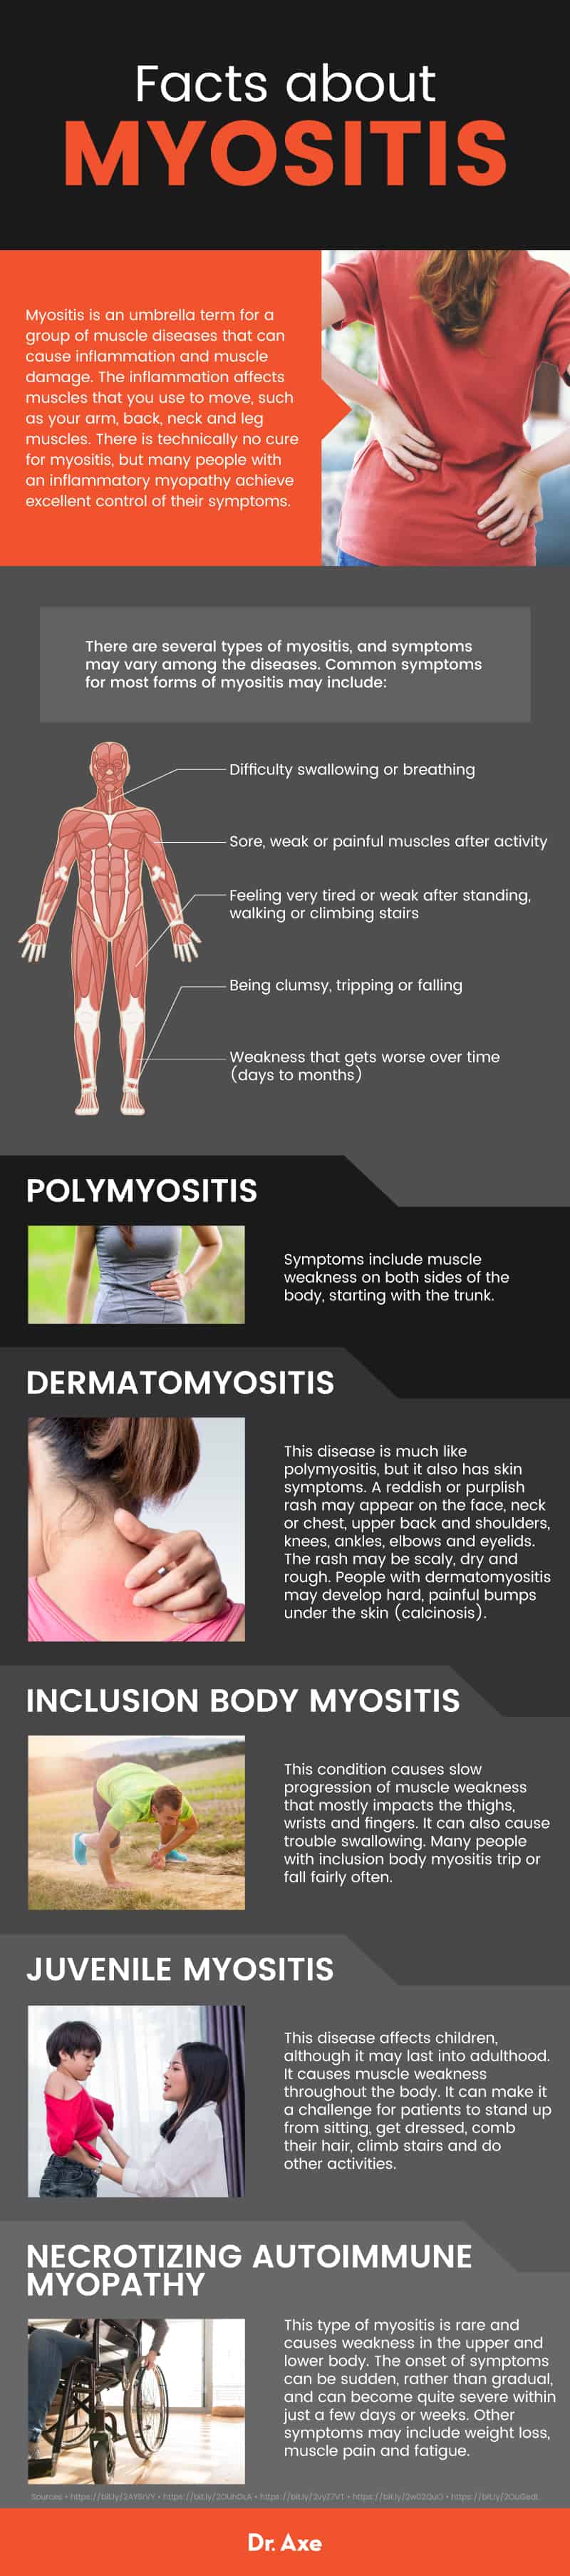 What is myositis? - Dr. Axe